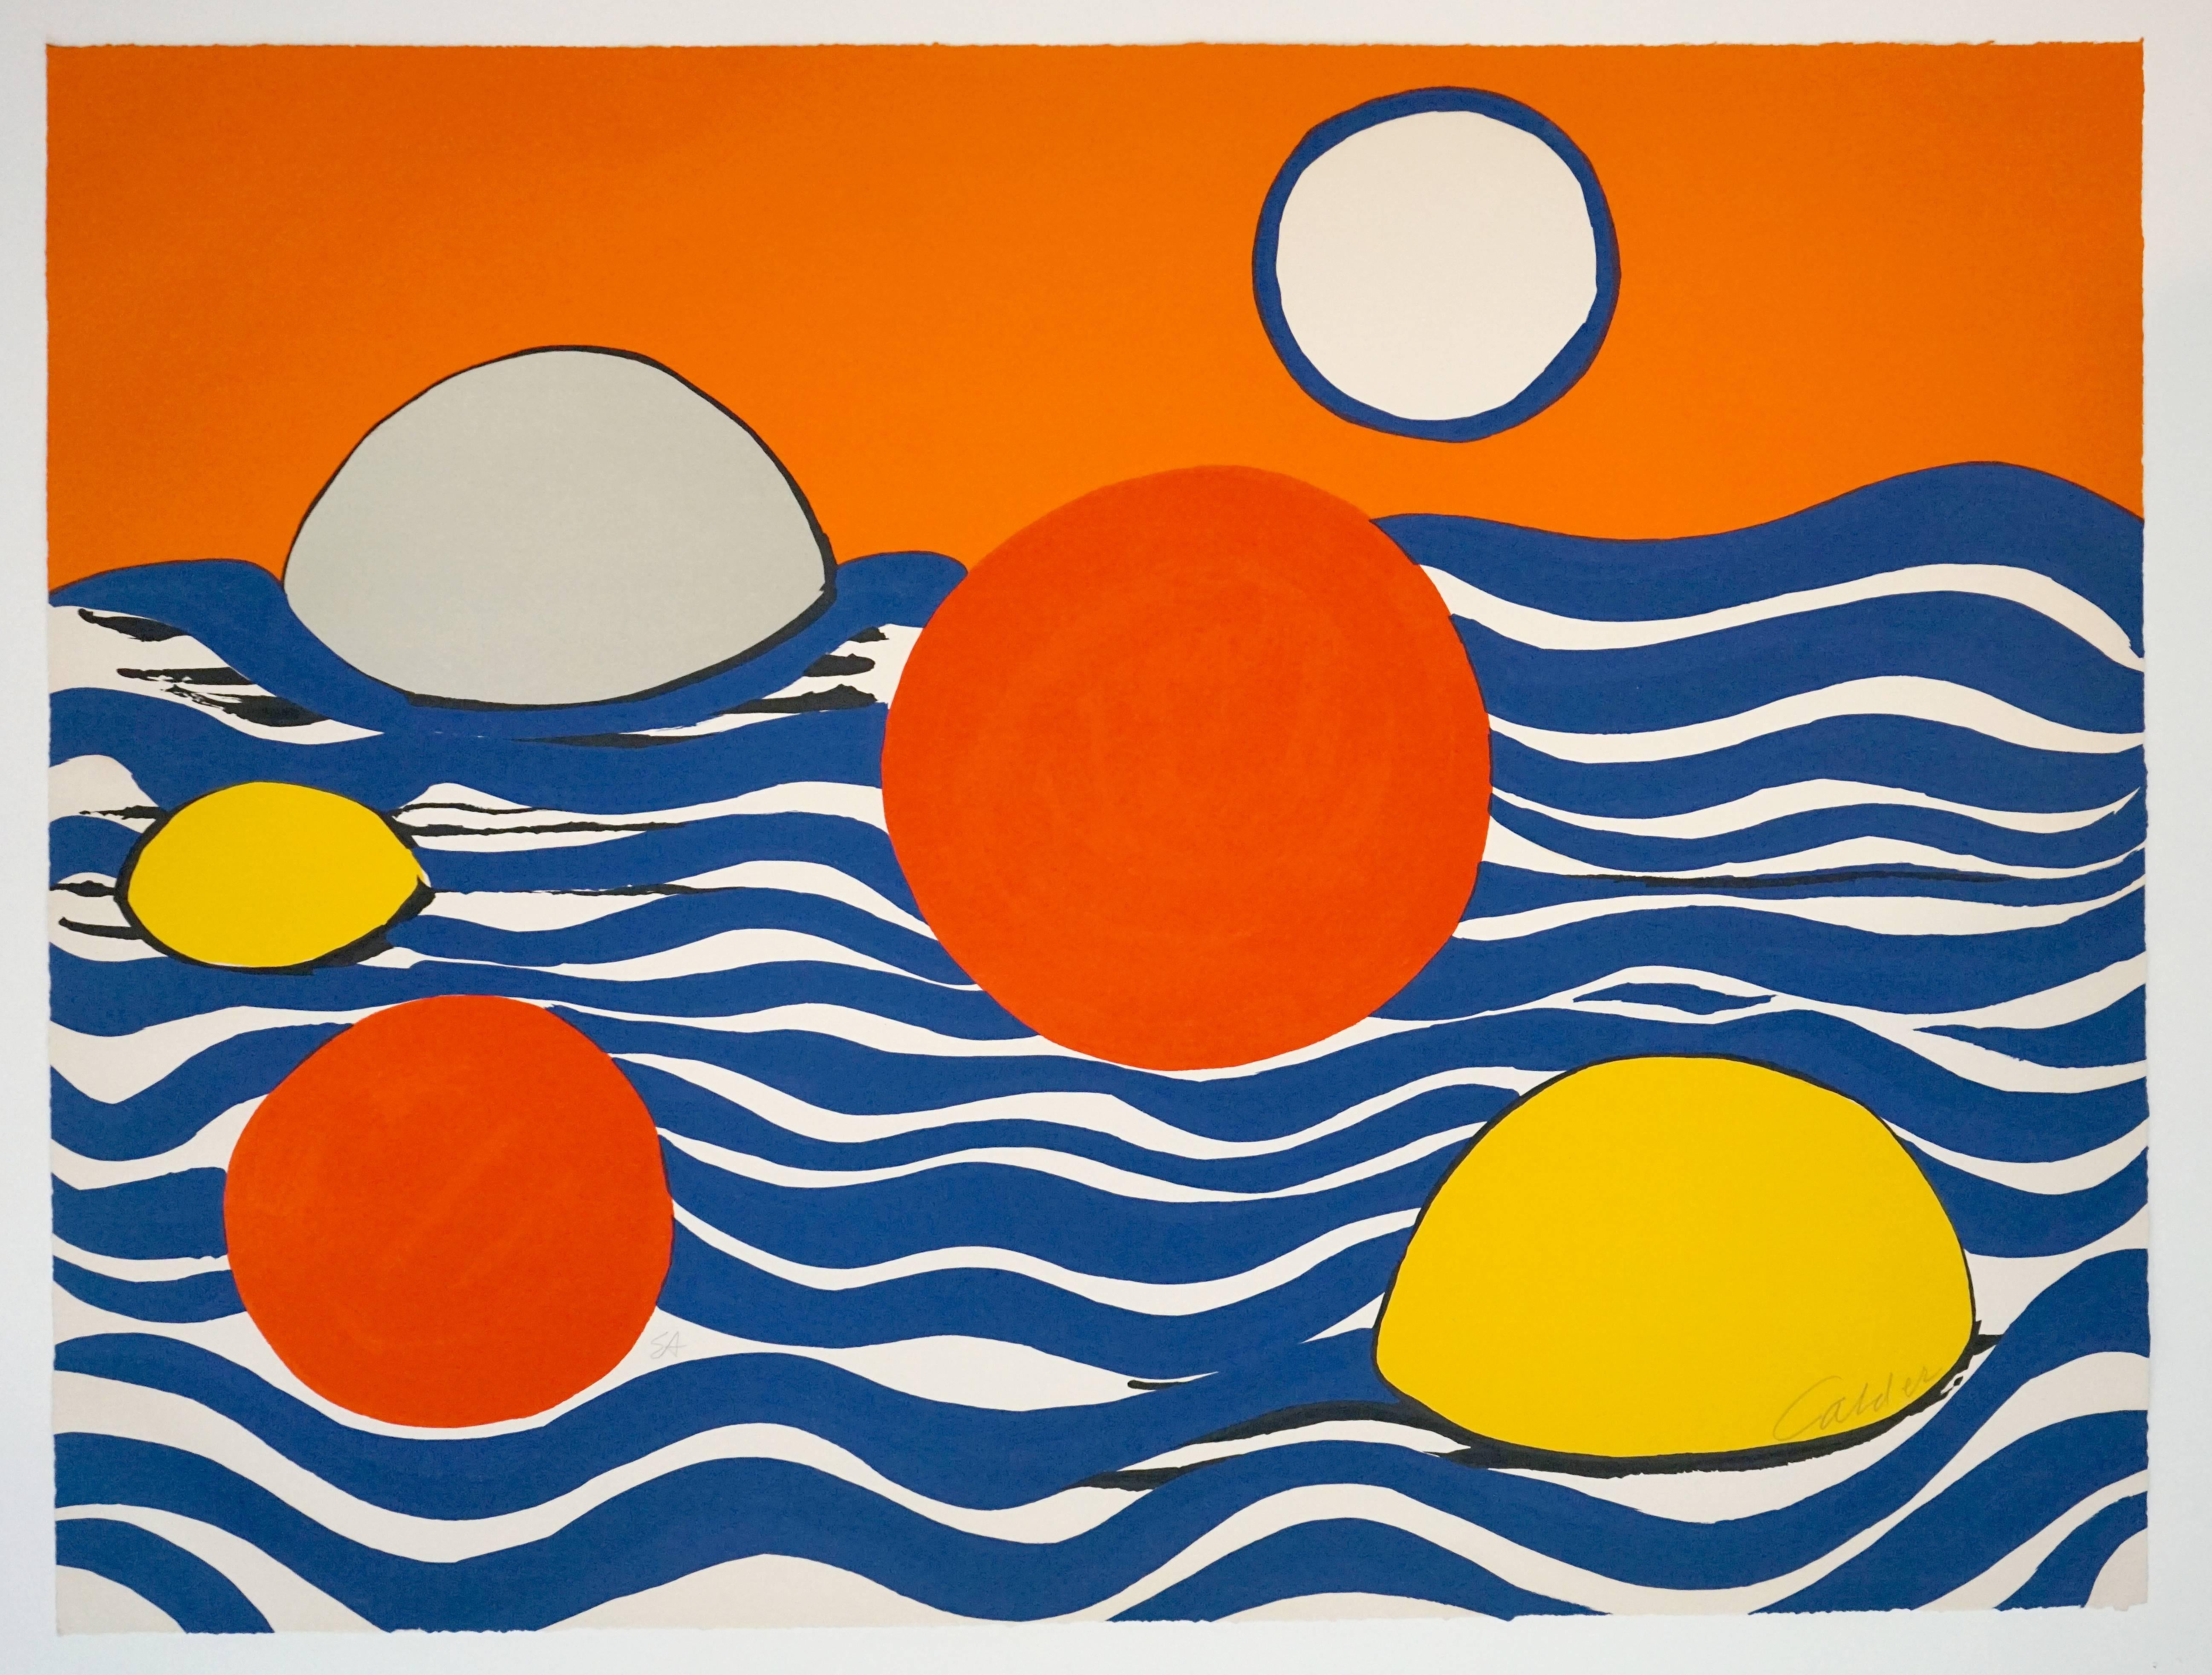 Circles and Waves - Abstract Print by Alexander Calder